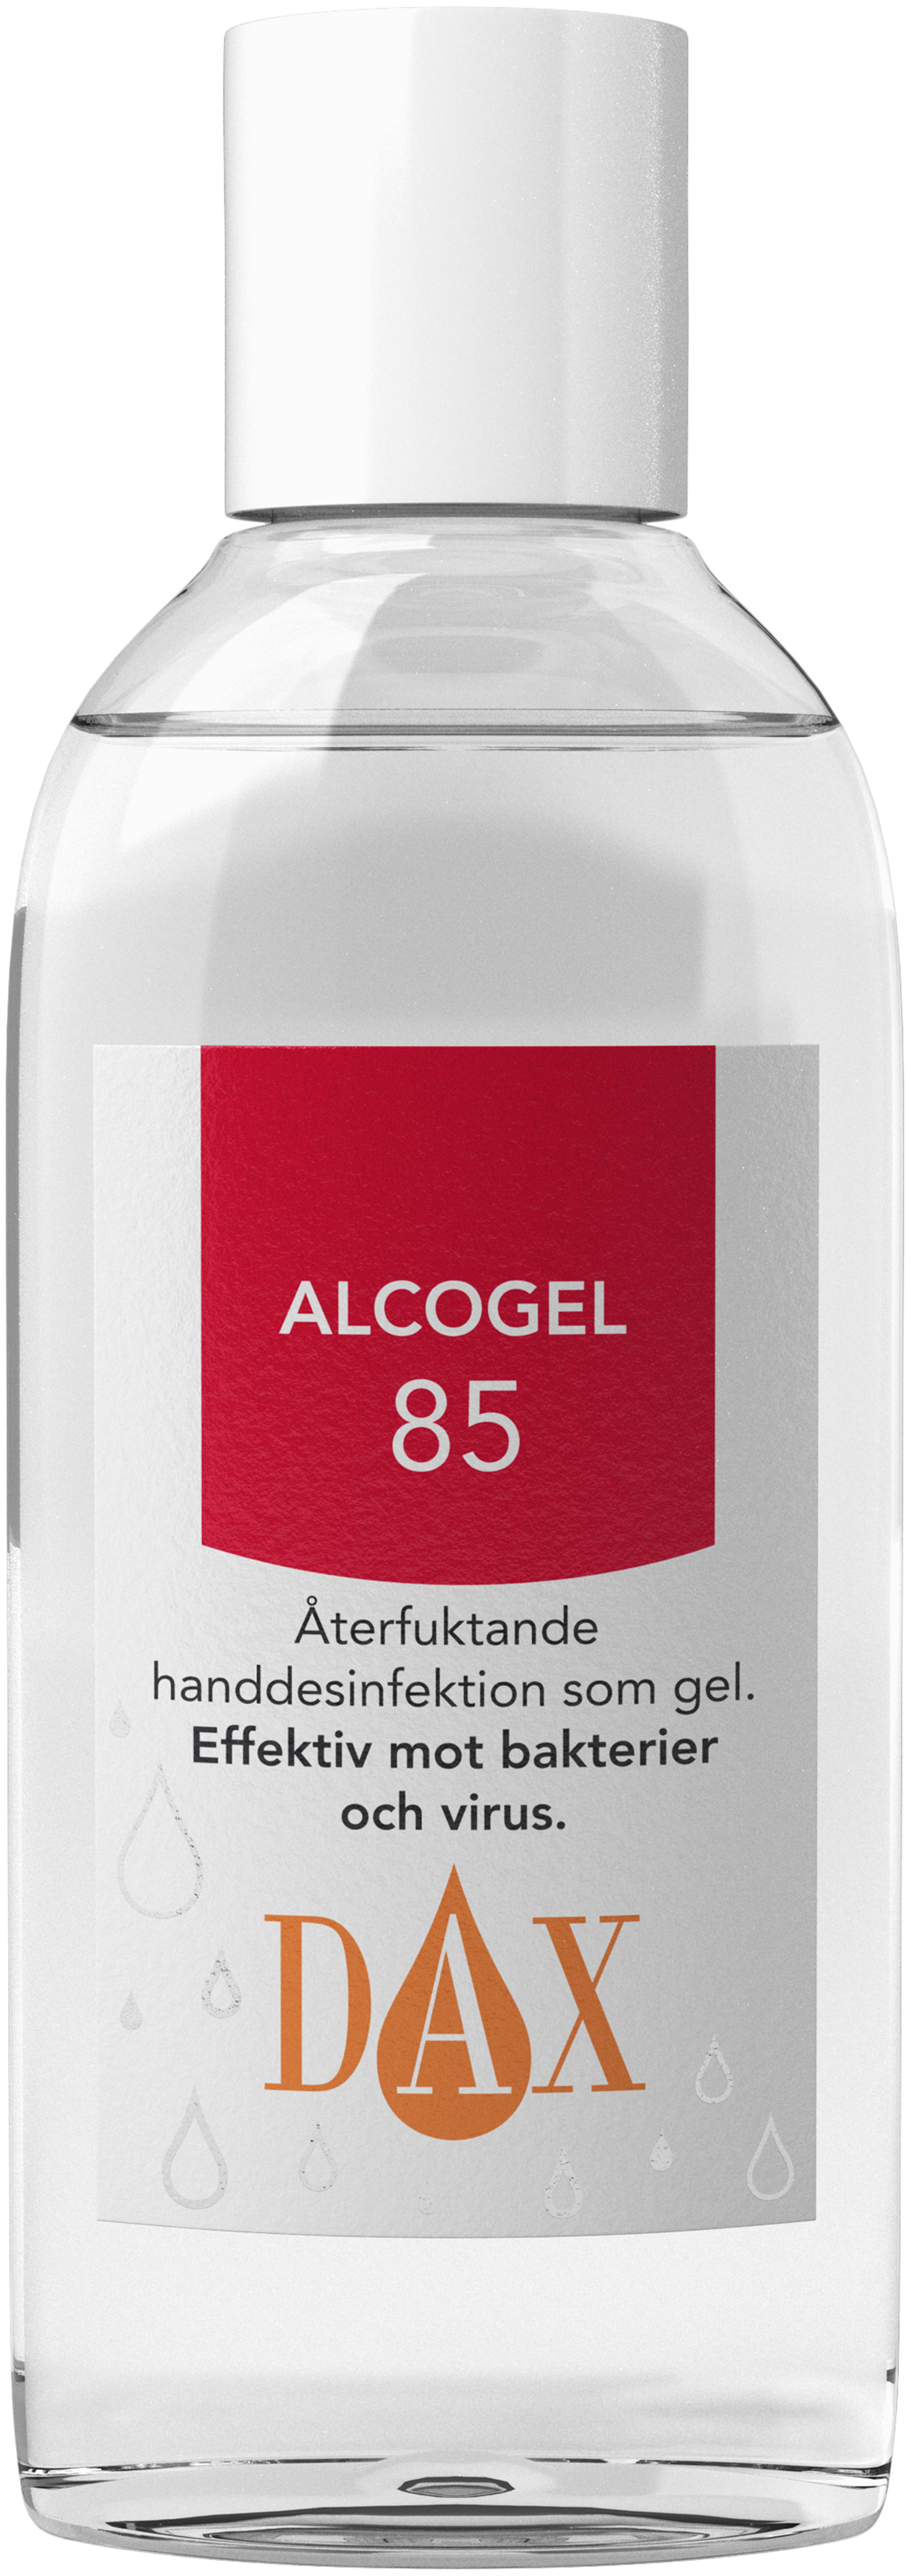 DAX Alcogel 150 ml